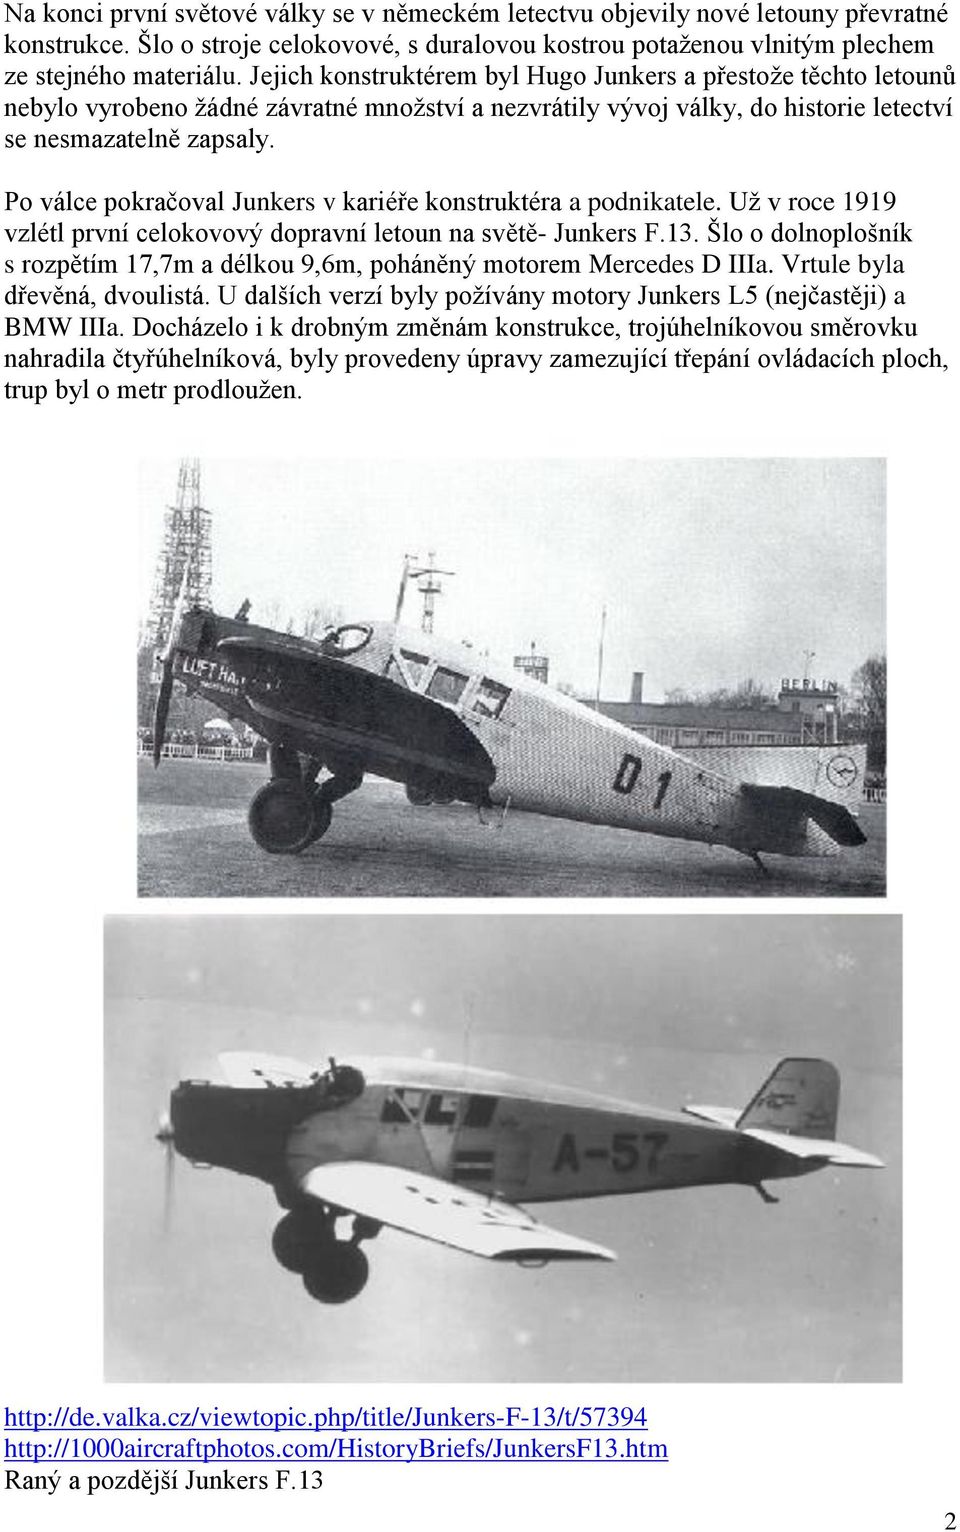 Po válce pokračoval Junkers v kariéře konstruktéra a podnikatele. Už v roce 1919 vzlétl první celokovový dopravní letoun na světě- Junkers F.13.